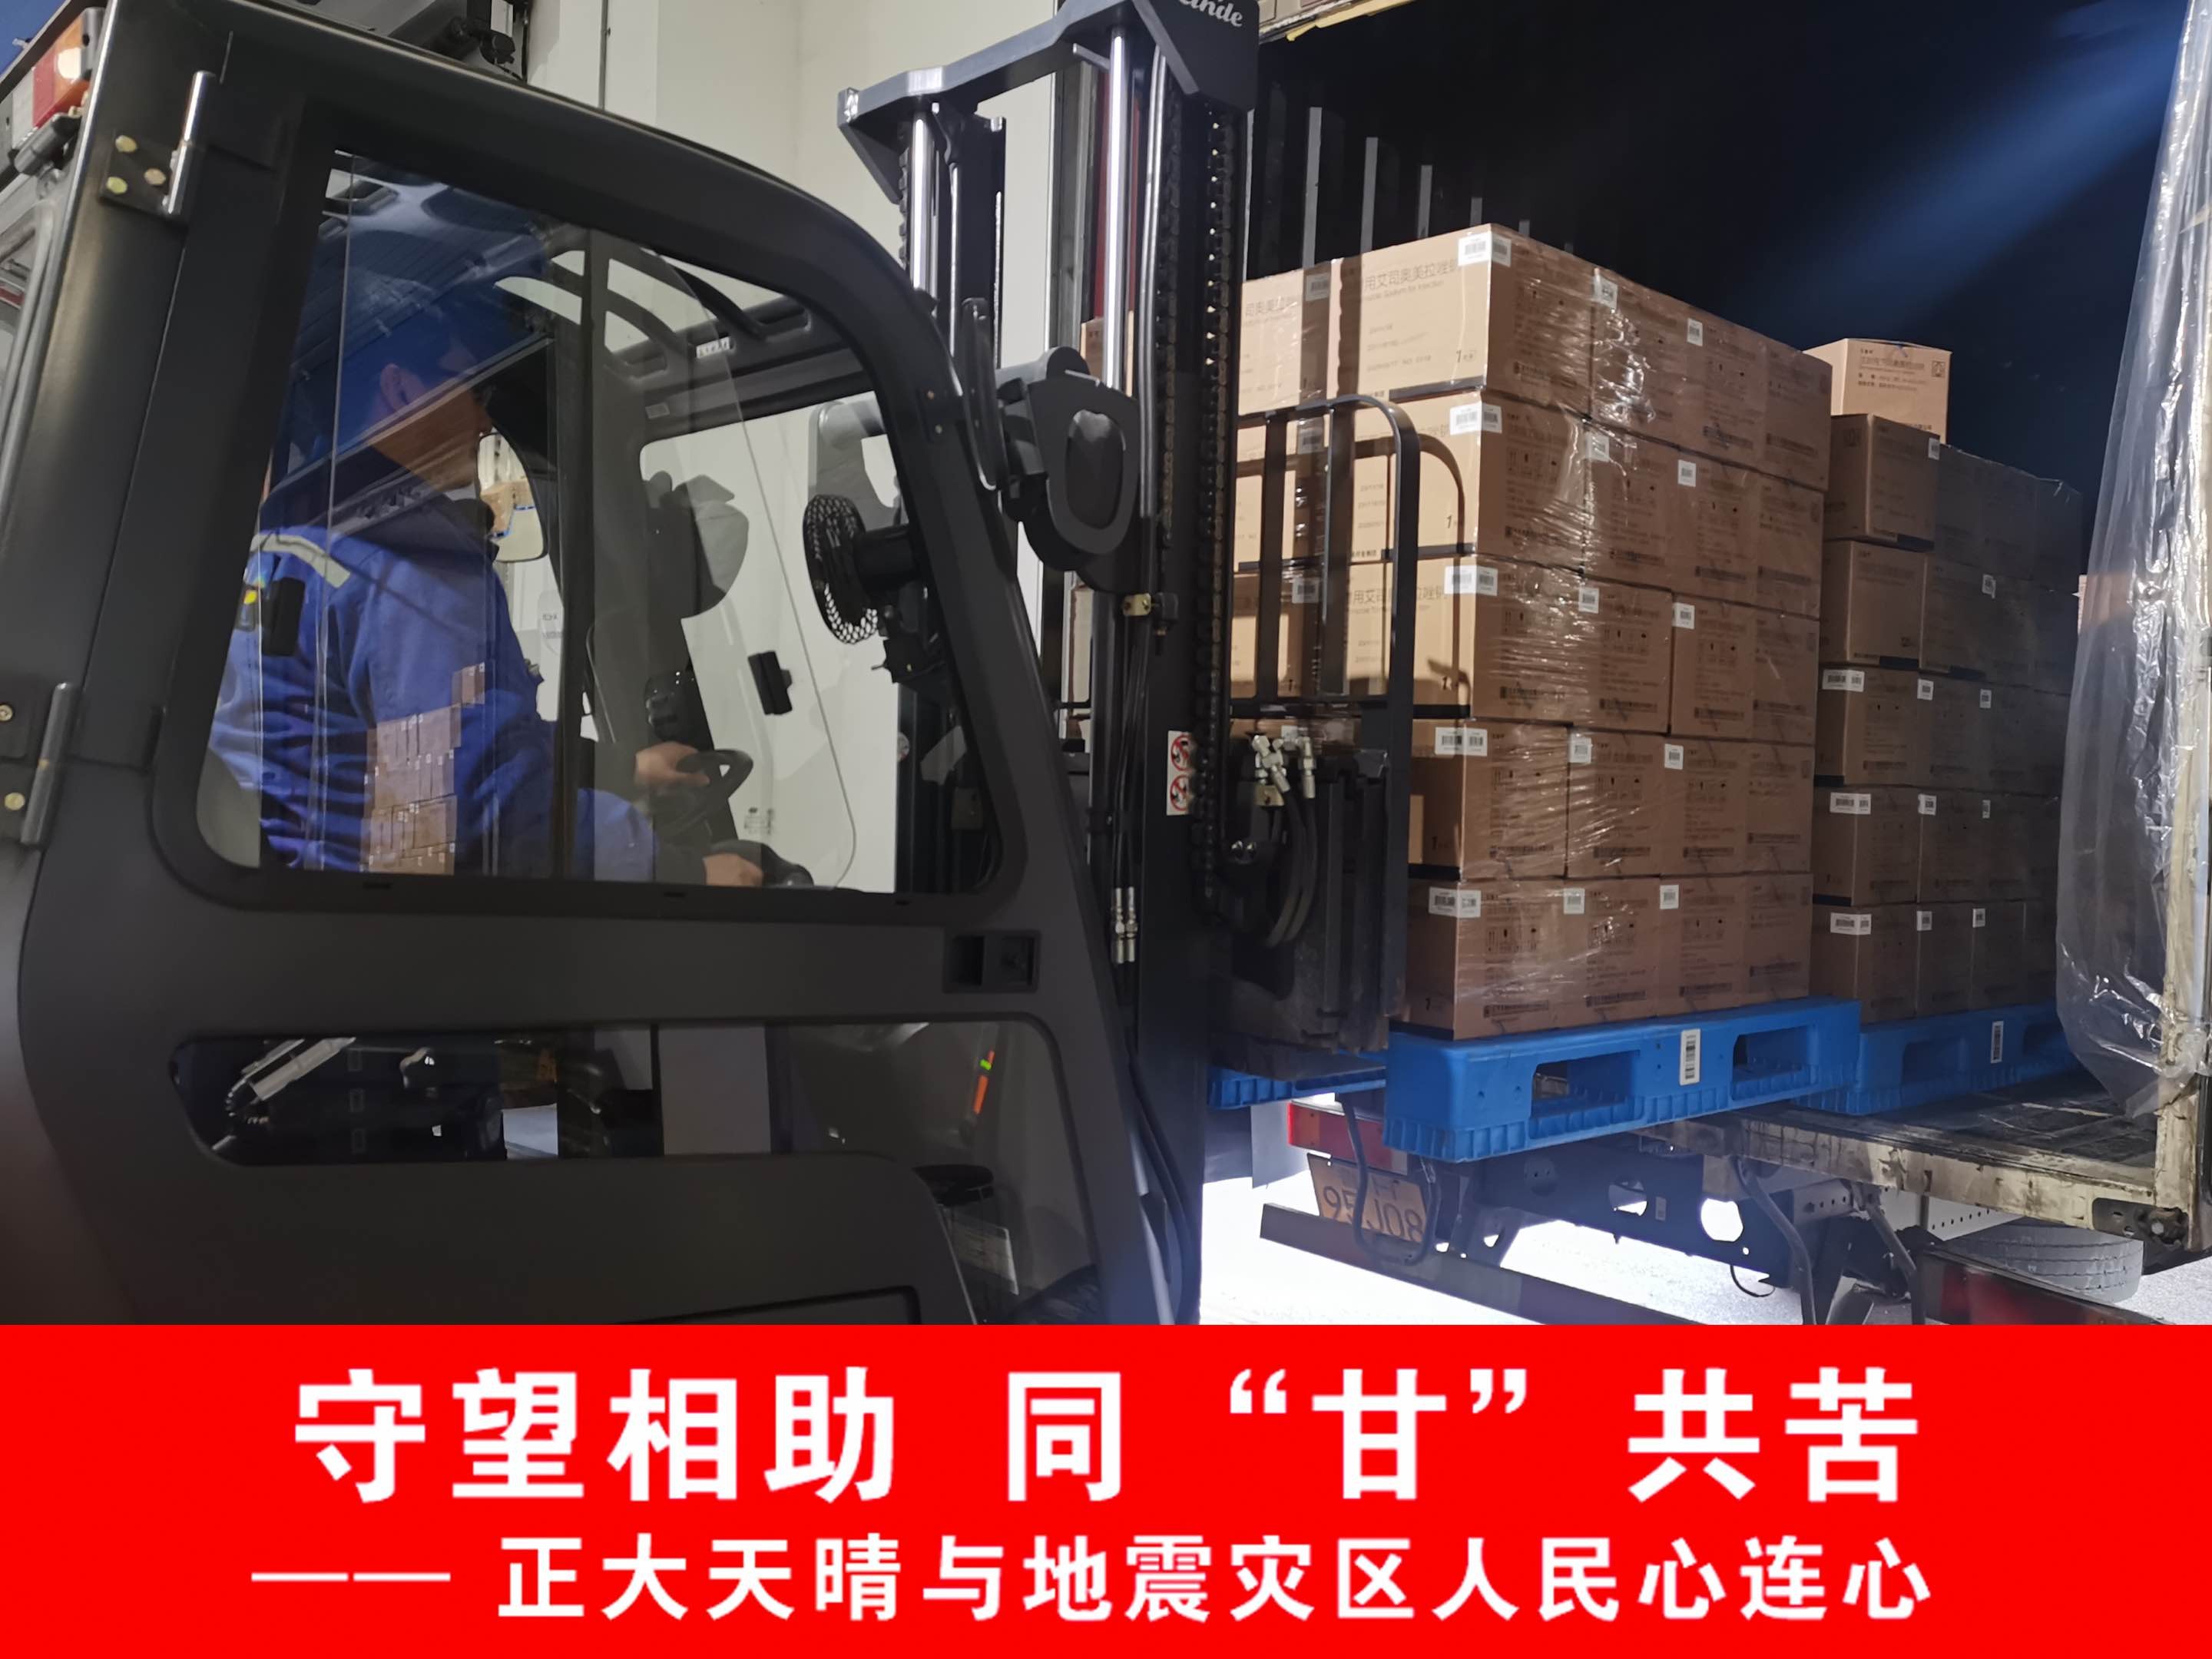 中国生物制药向甘肃地震灾区捐赠550万元药品与食品